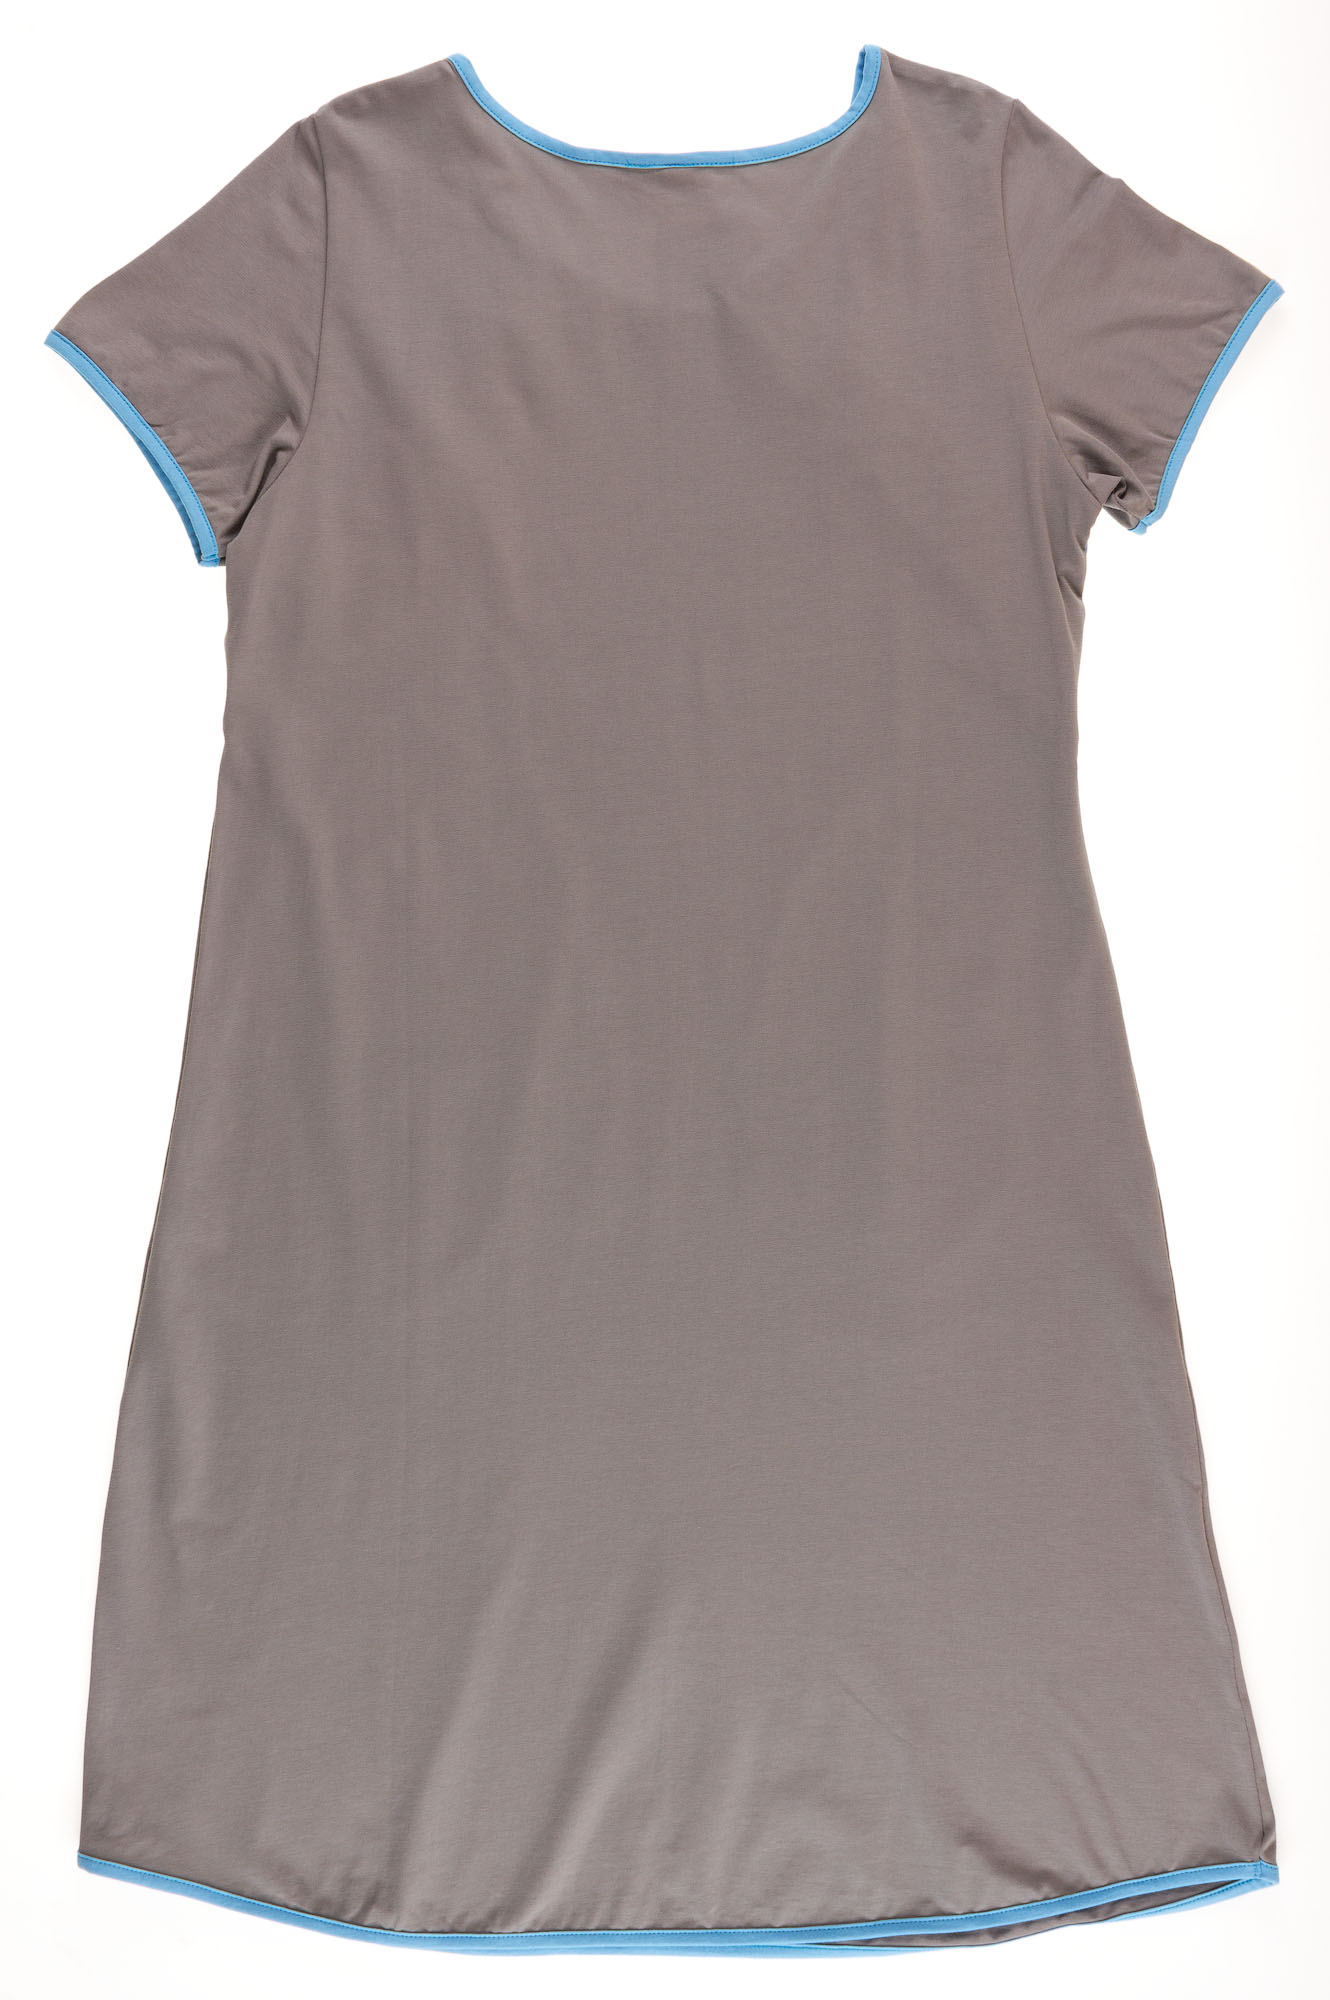 Рубашка для годування Vаleri-tex сіра 2005-55-042 - розміри